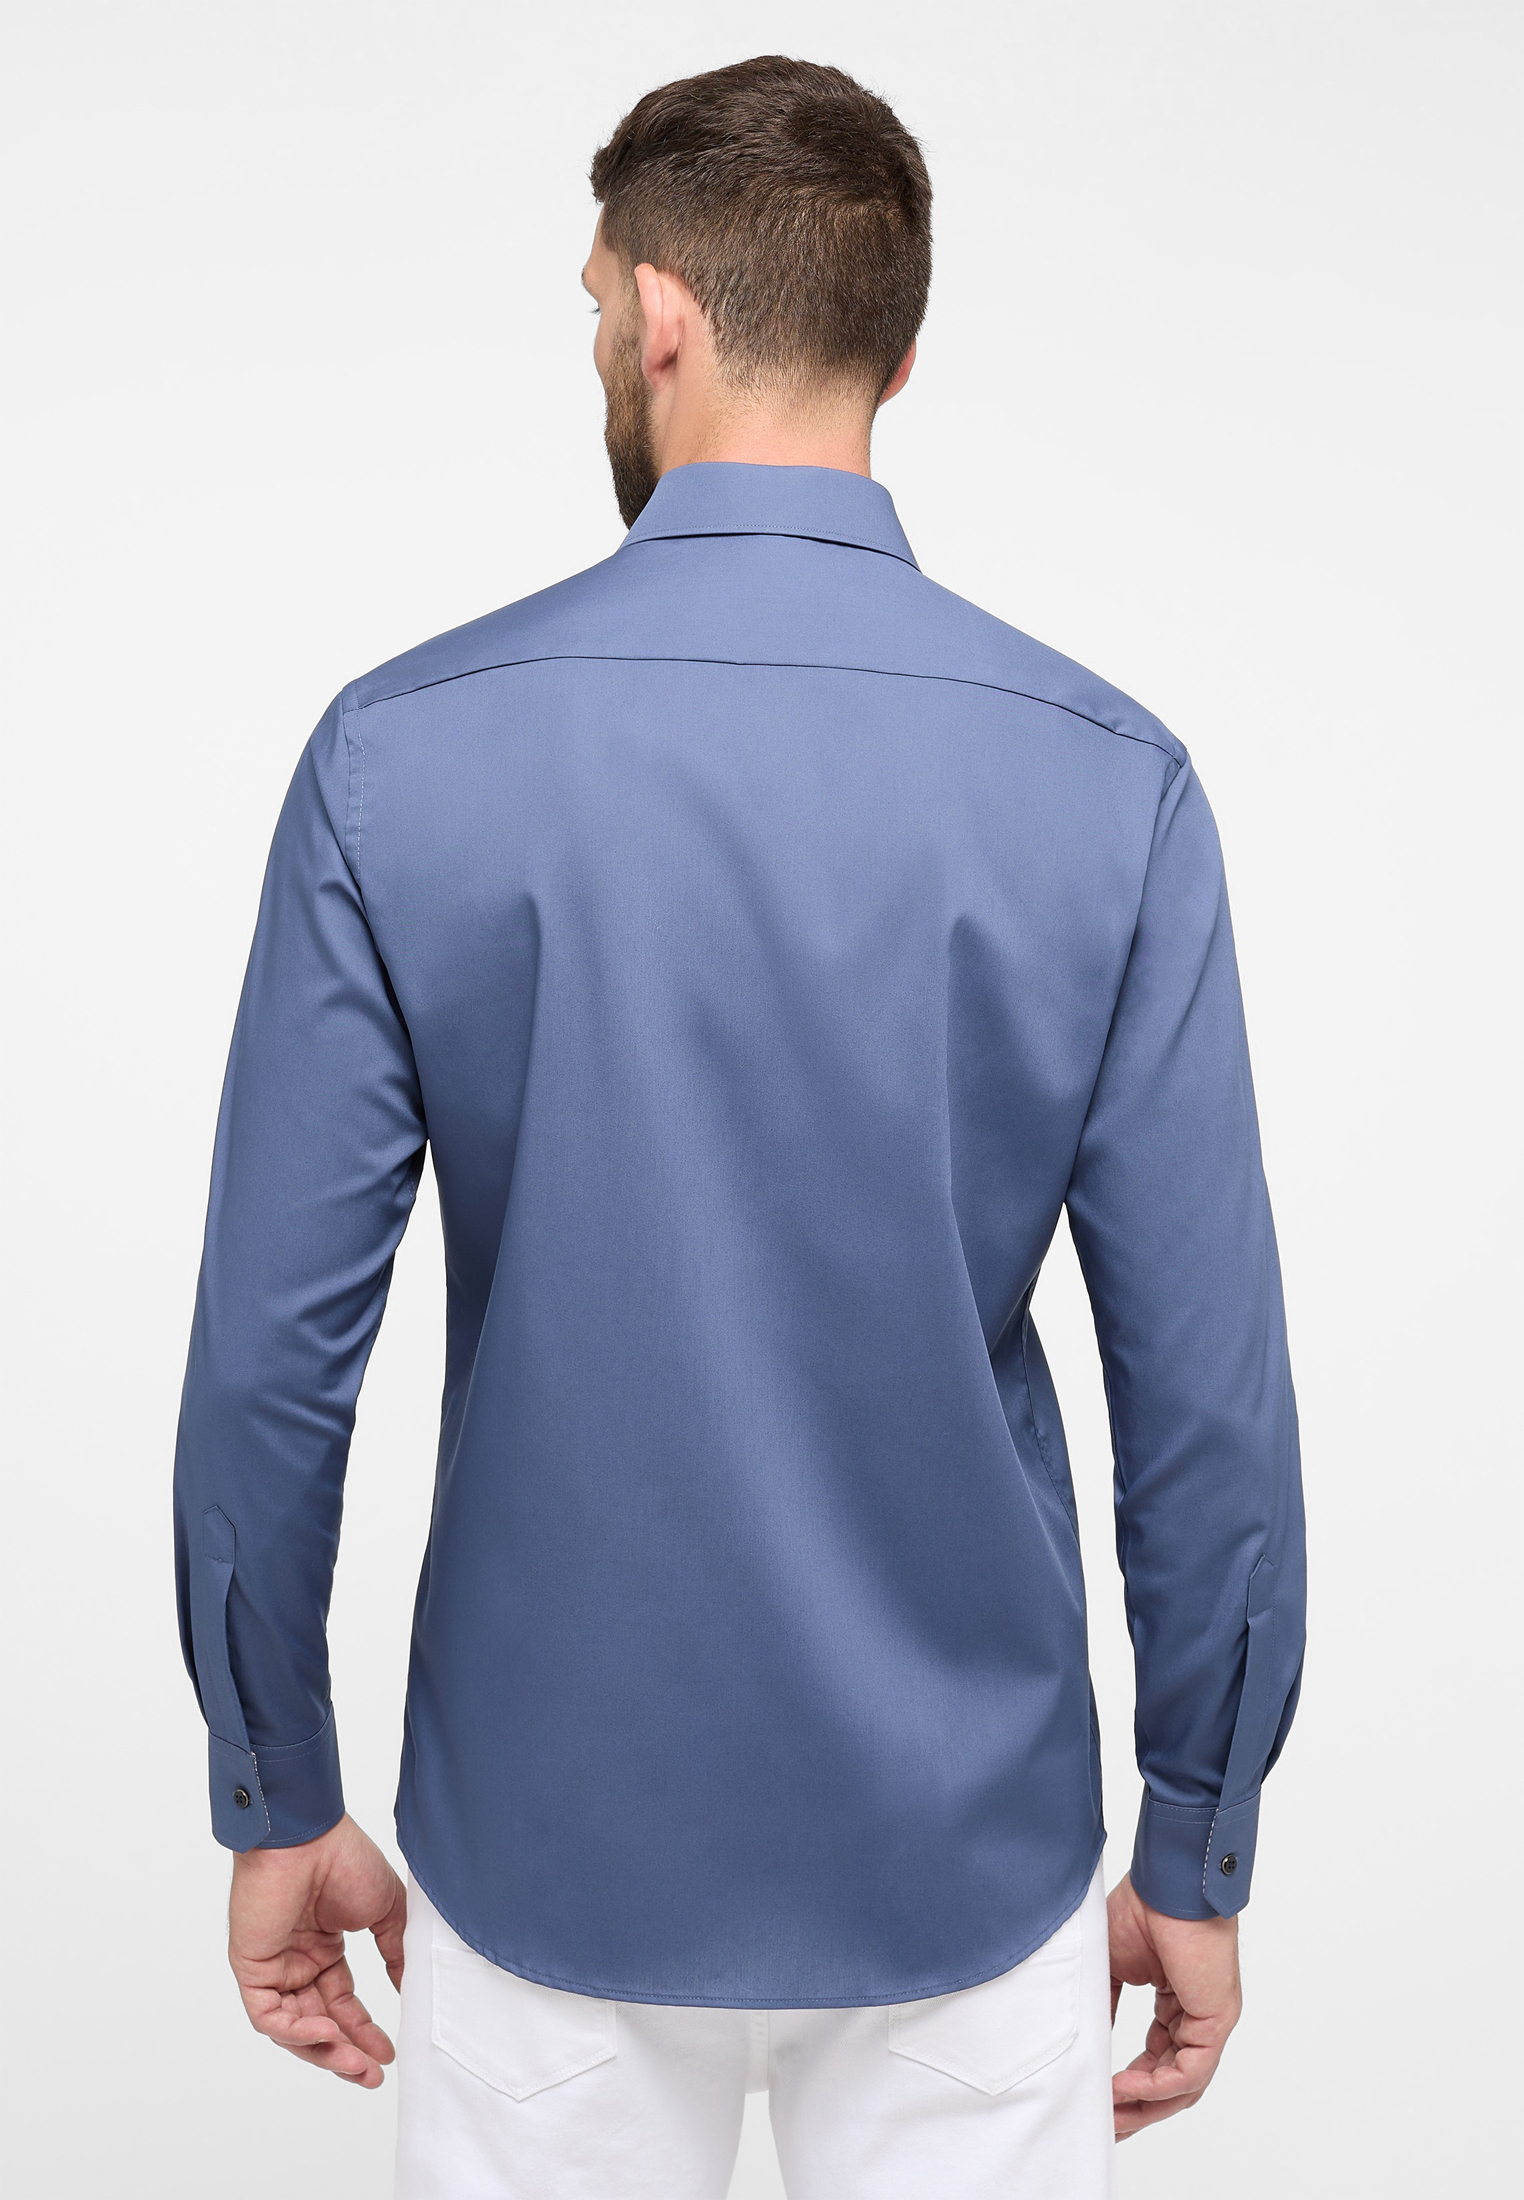 MODERN FIT | Shirt in rauchblau rauchblau Original 40 unifarben | | | 1SH11722-01-62-40-1/1 Langarm